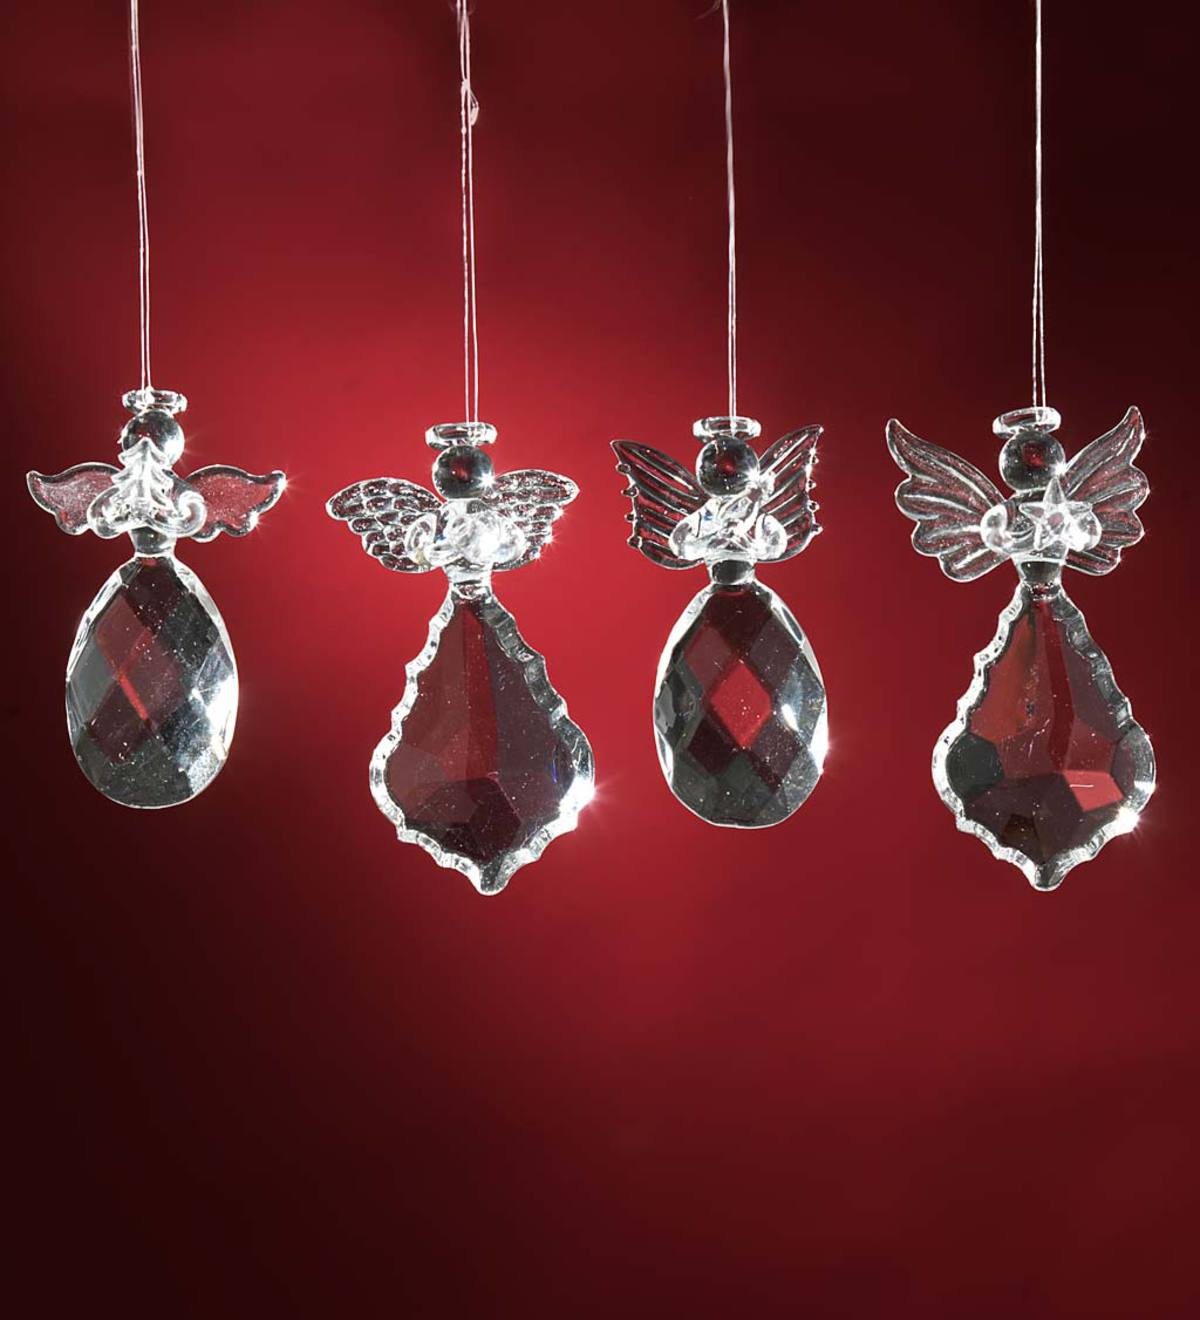 Glass Angel Ornaments, Set of 4